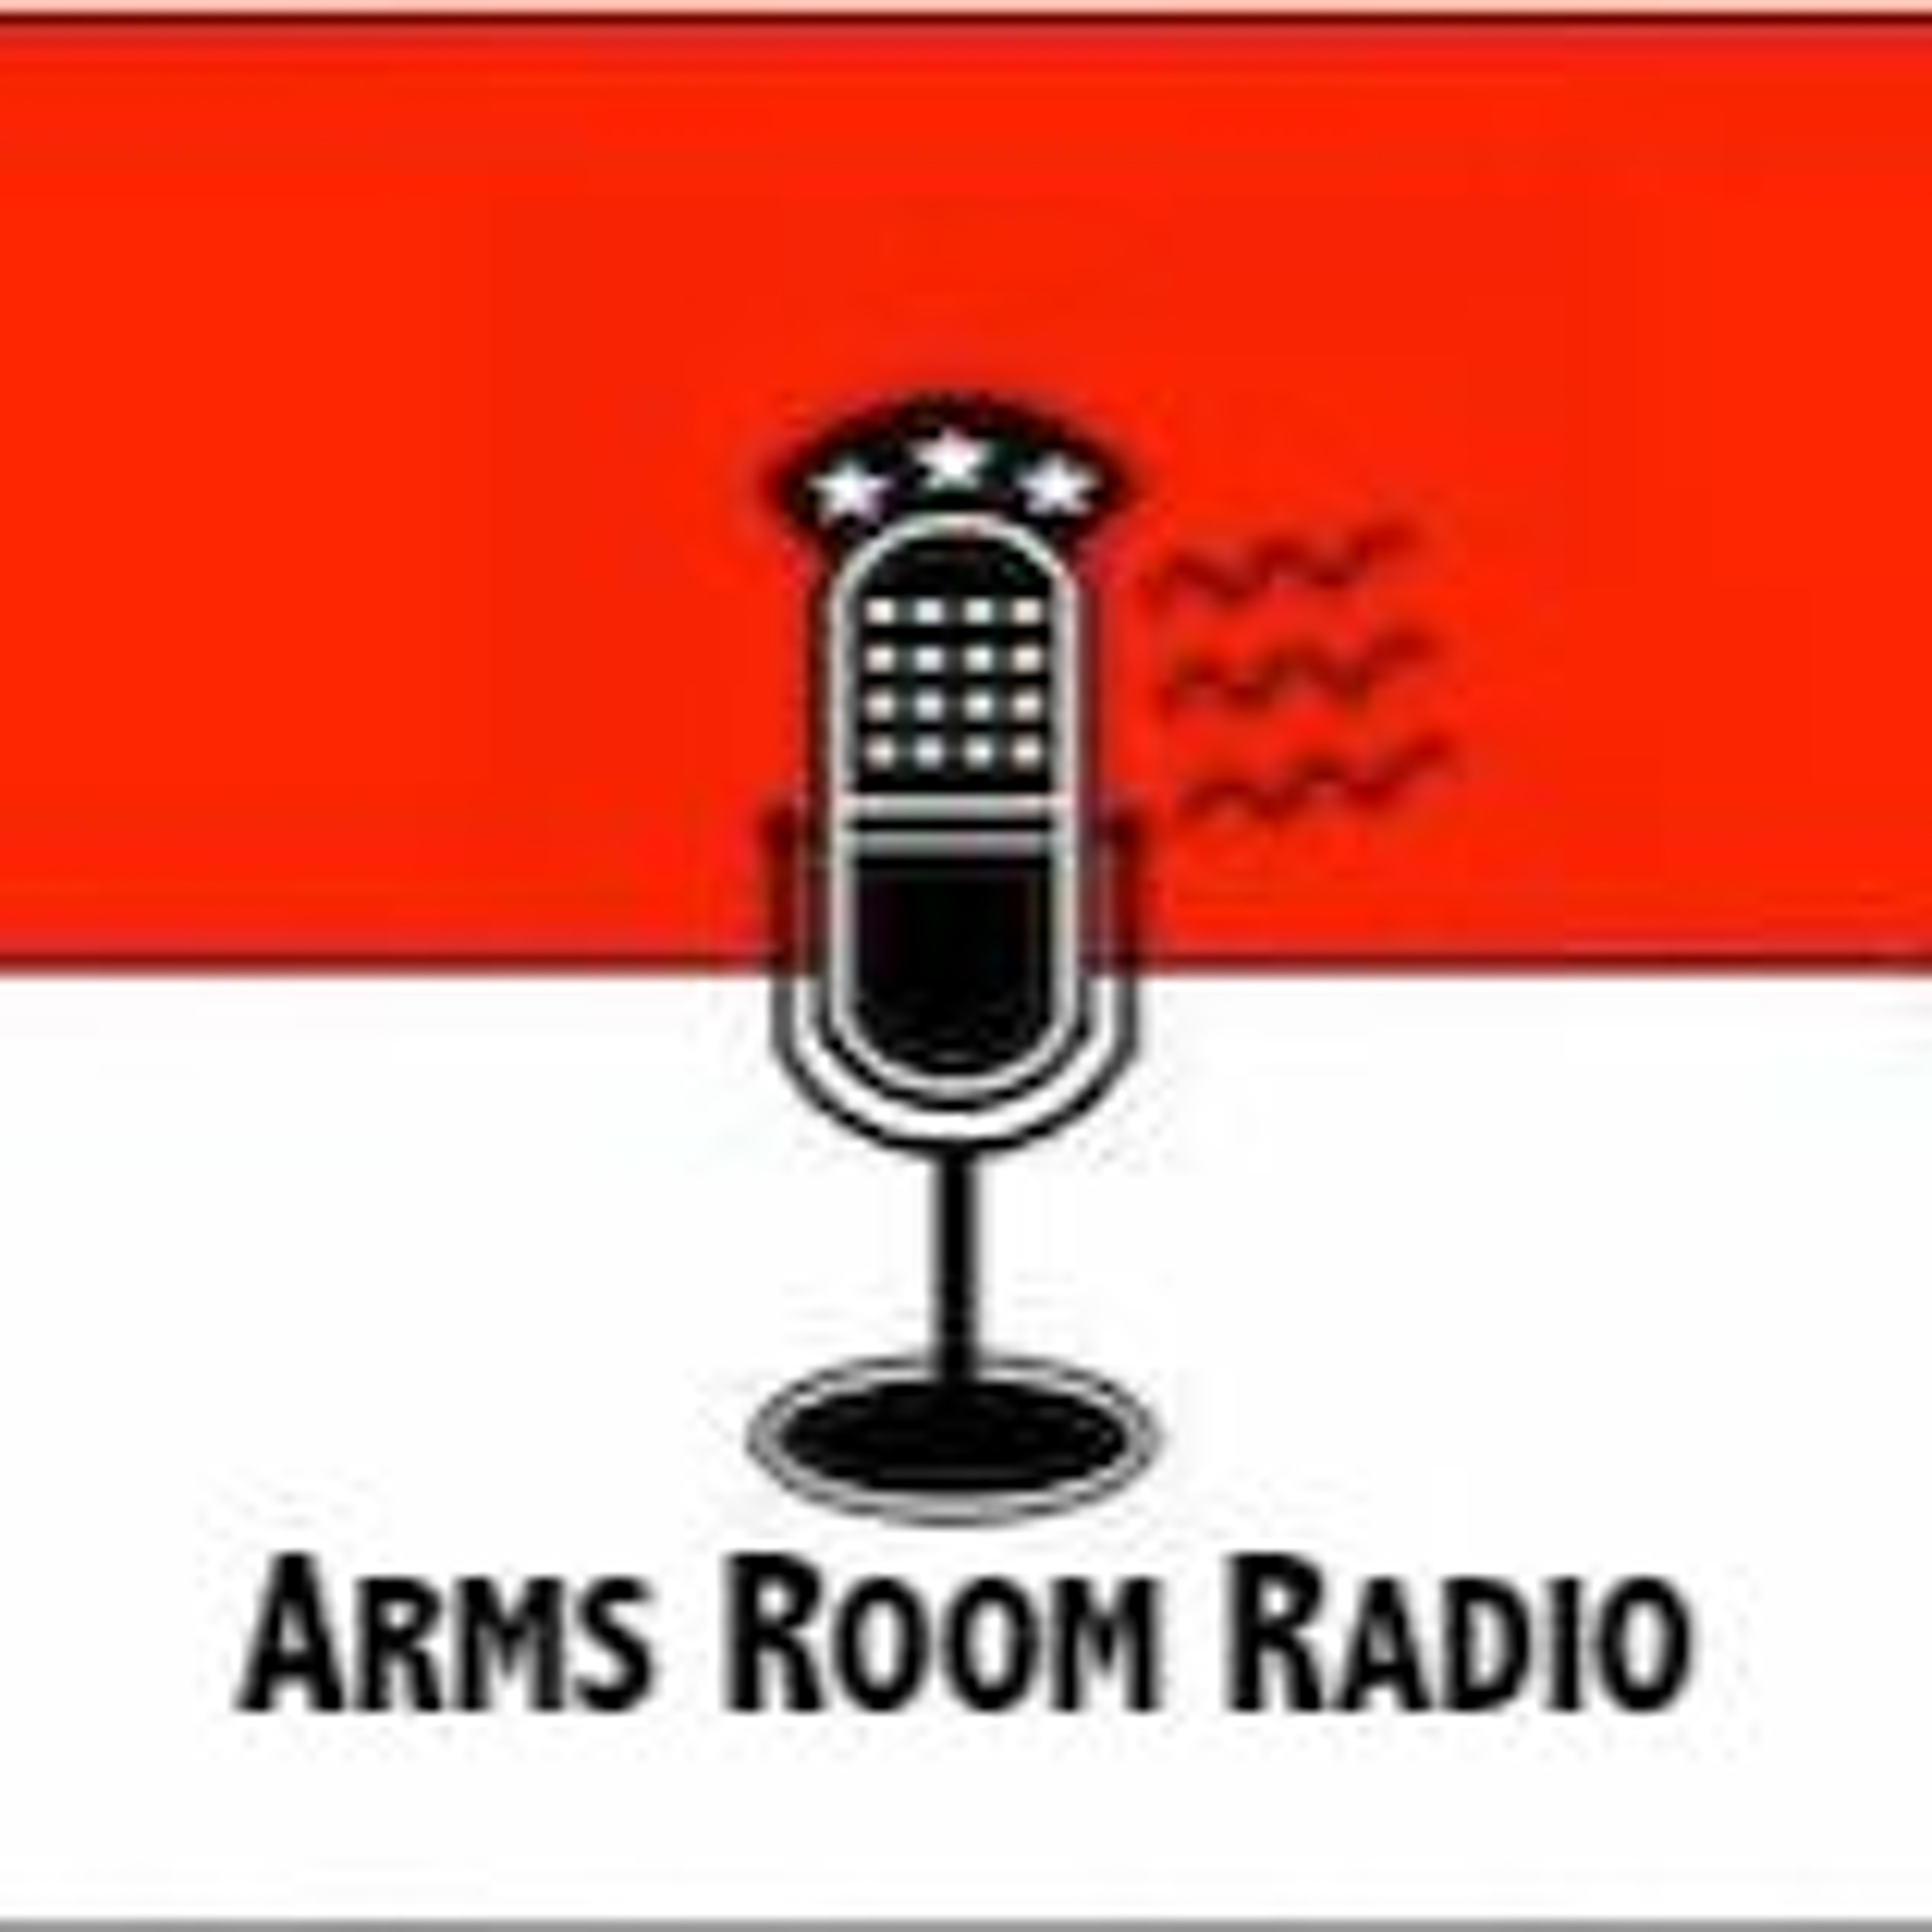 ArmsRoomRadio 01.07.23 Dave'Boon'Benton at Always Armed